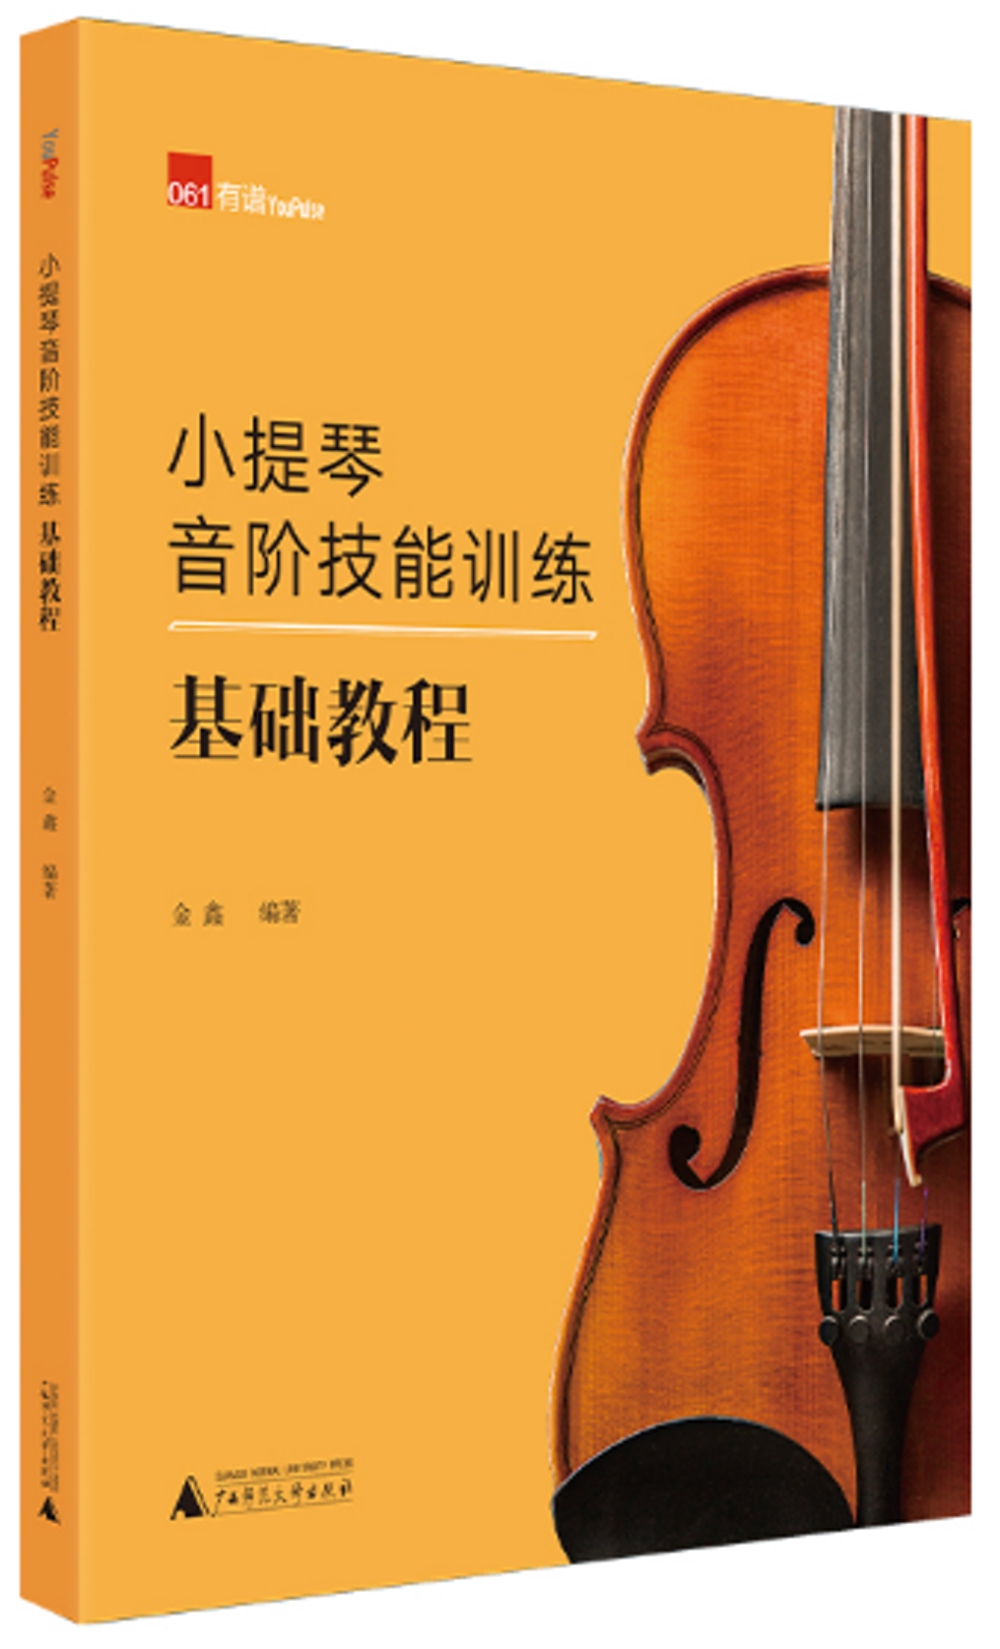 小提琴音階技能訓練基礎教程